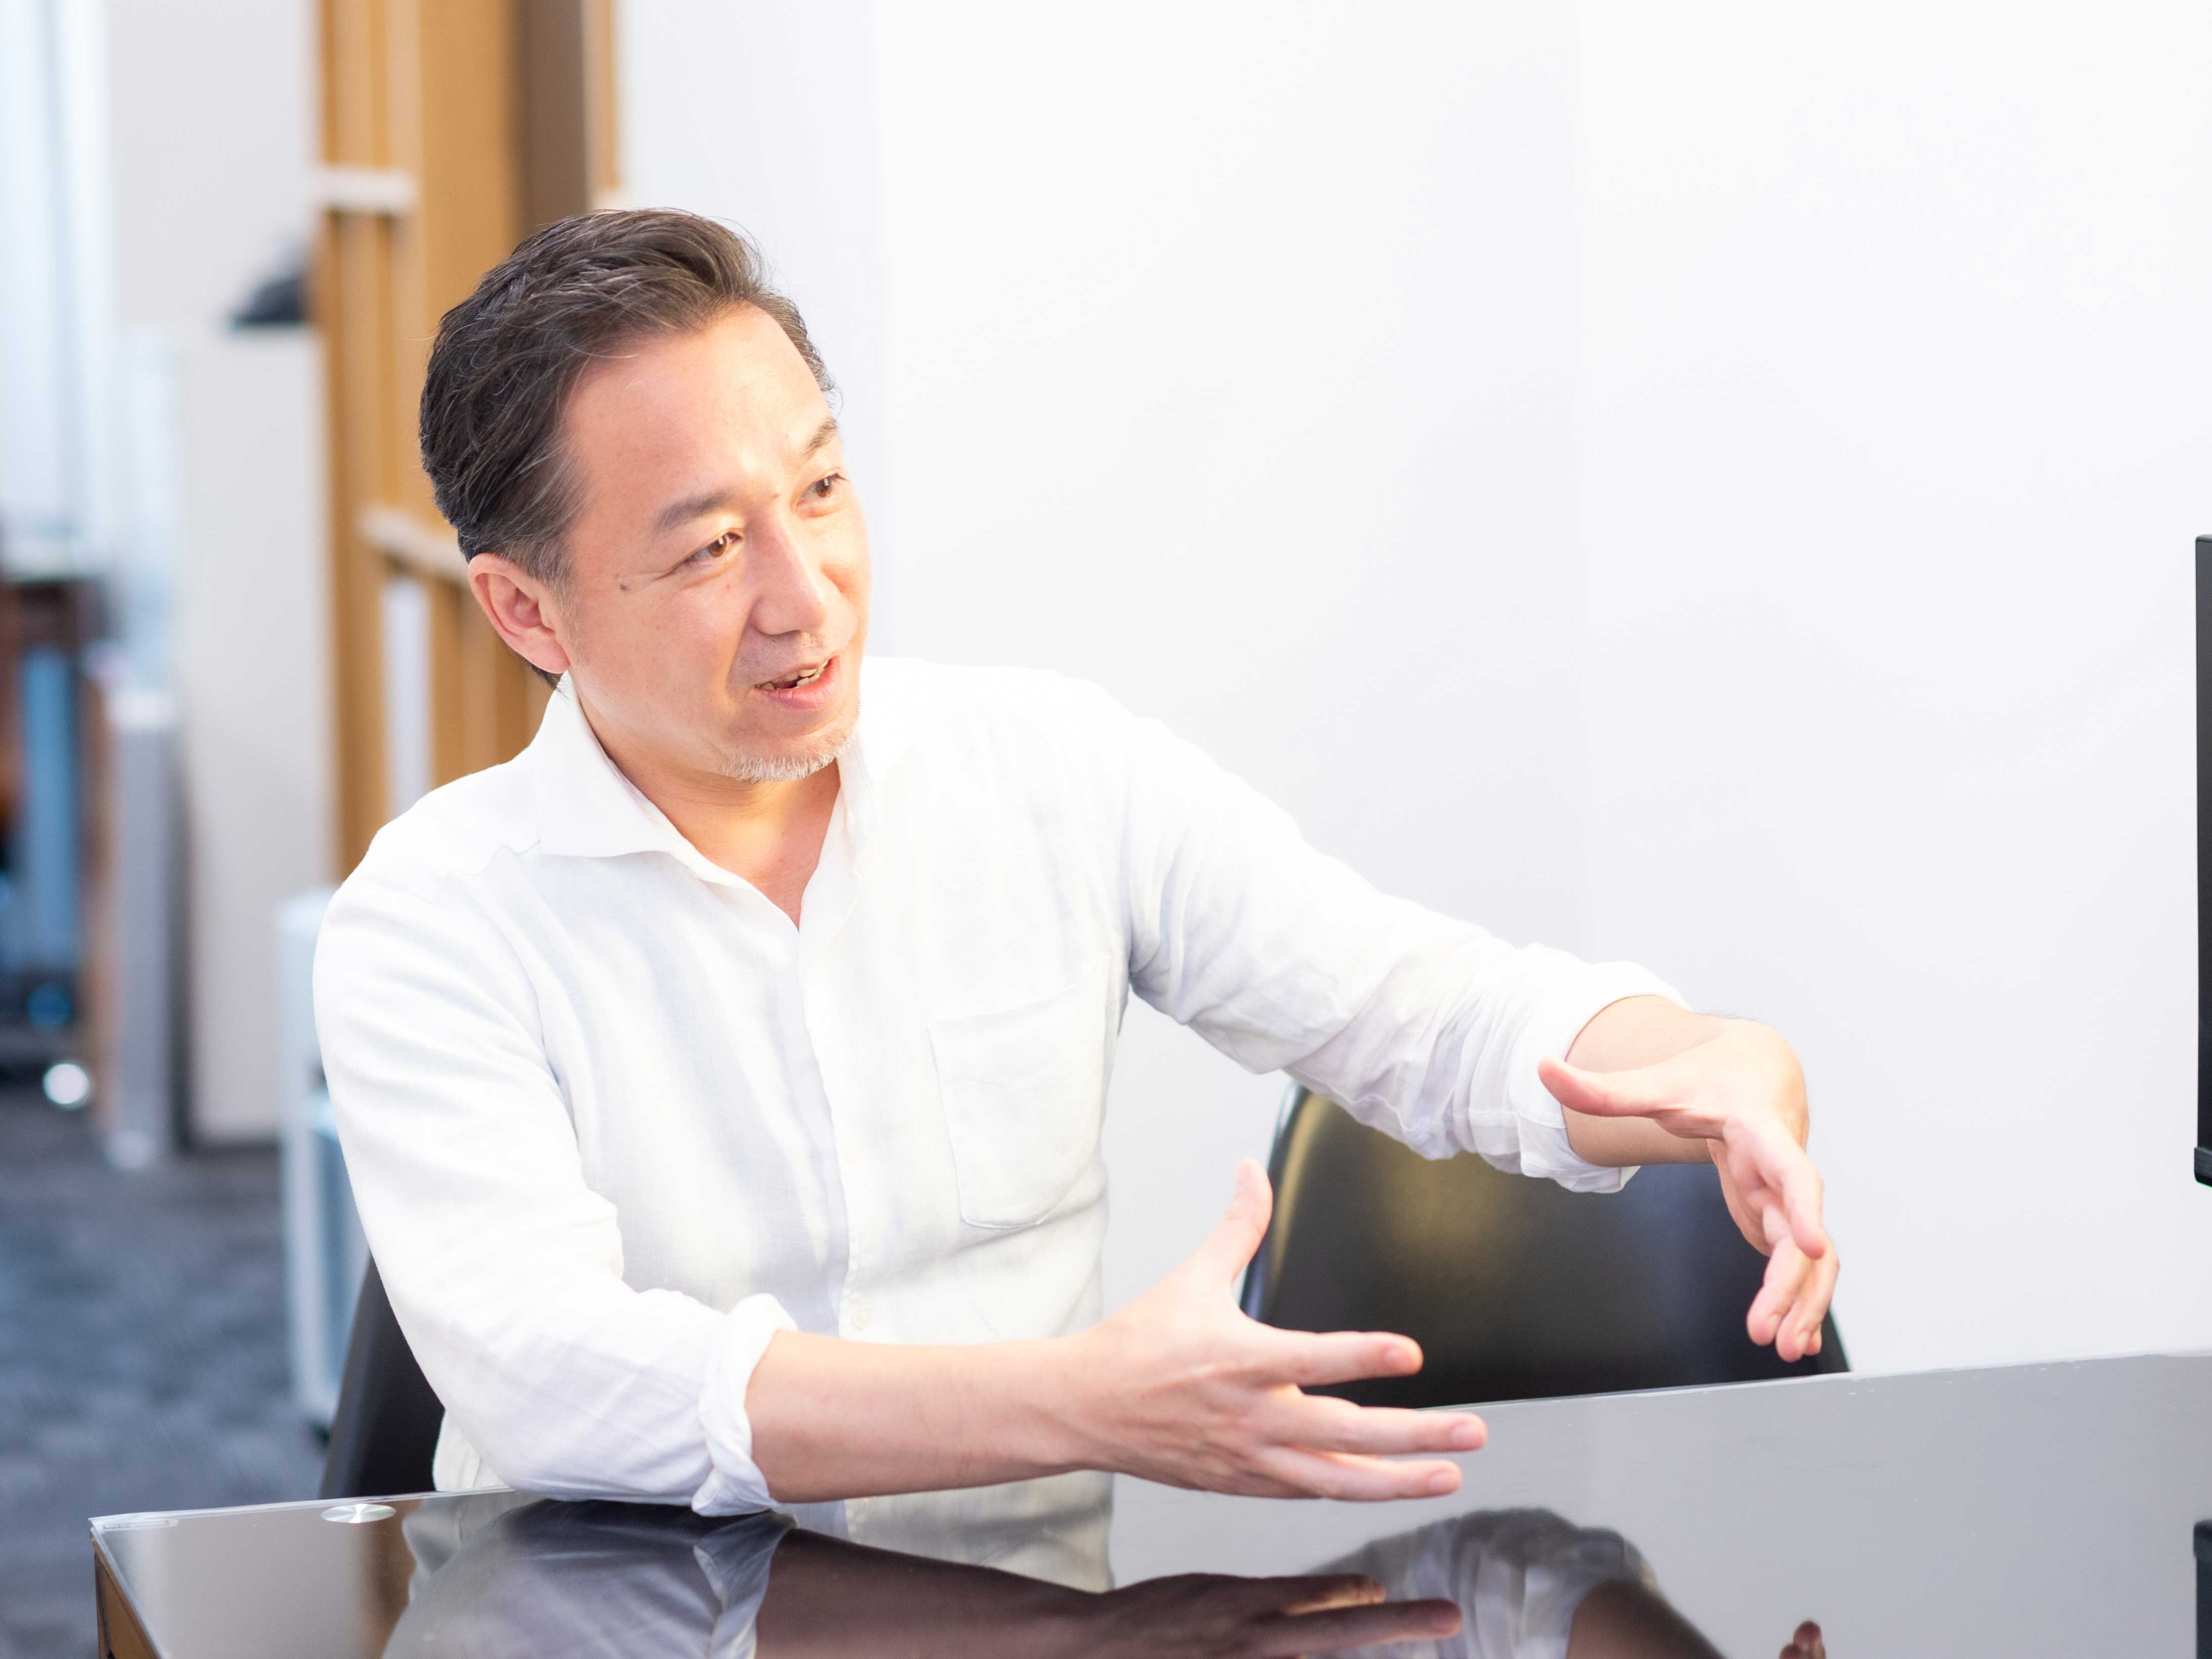 代表取締役社長の冨田 浩嗣氏
同社はさらなる発展を目指して、IoTや5Gといった先端分野への進出を進めている。